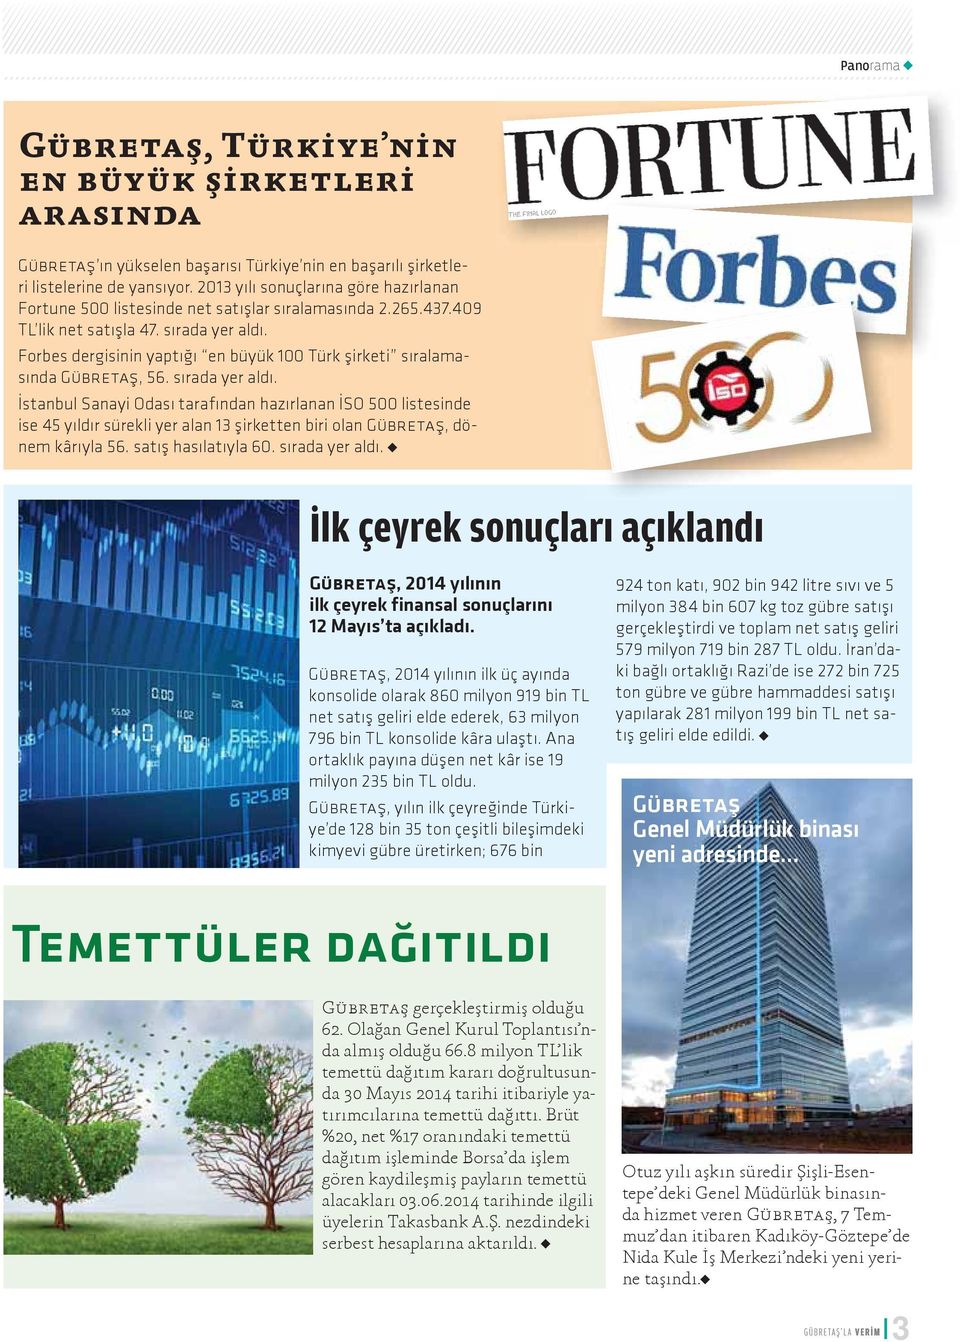 Forbes dergisinin yaptığı en büyük 100 Türk şirketi sıralamasında Gübretaş, 56. sırada yer aldı.